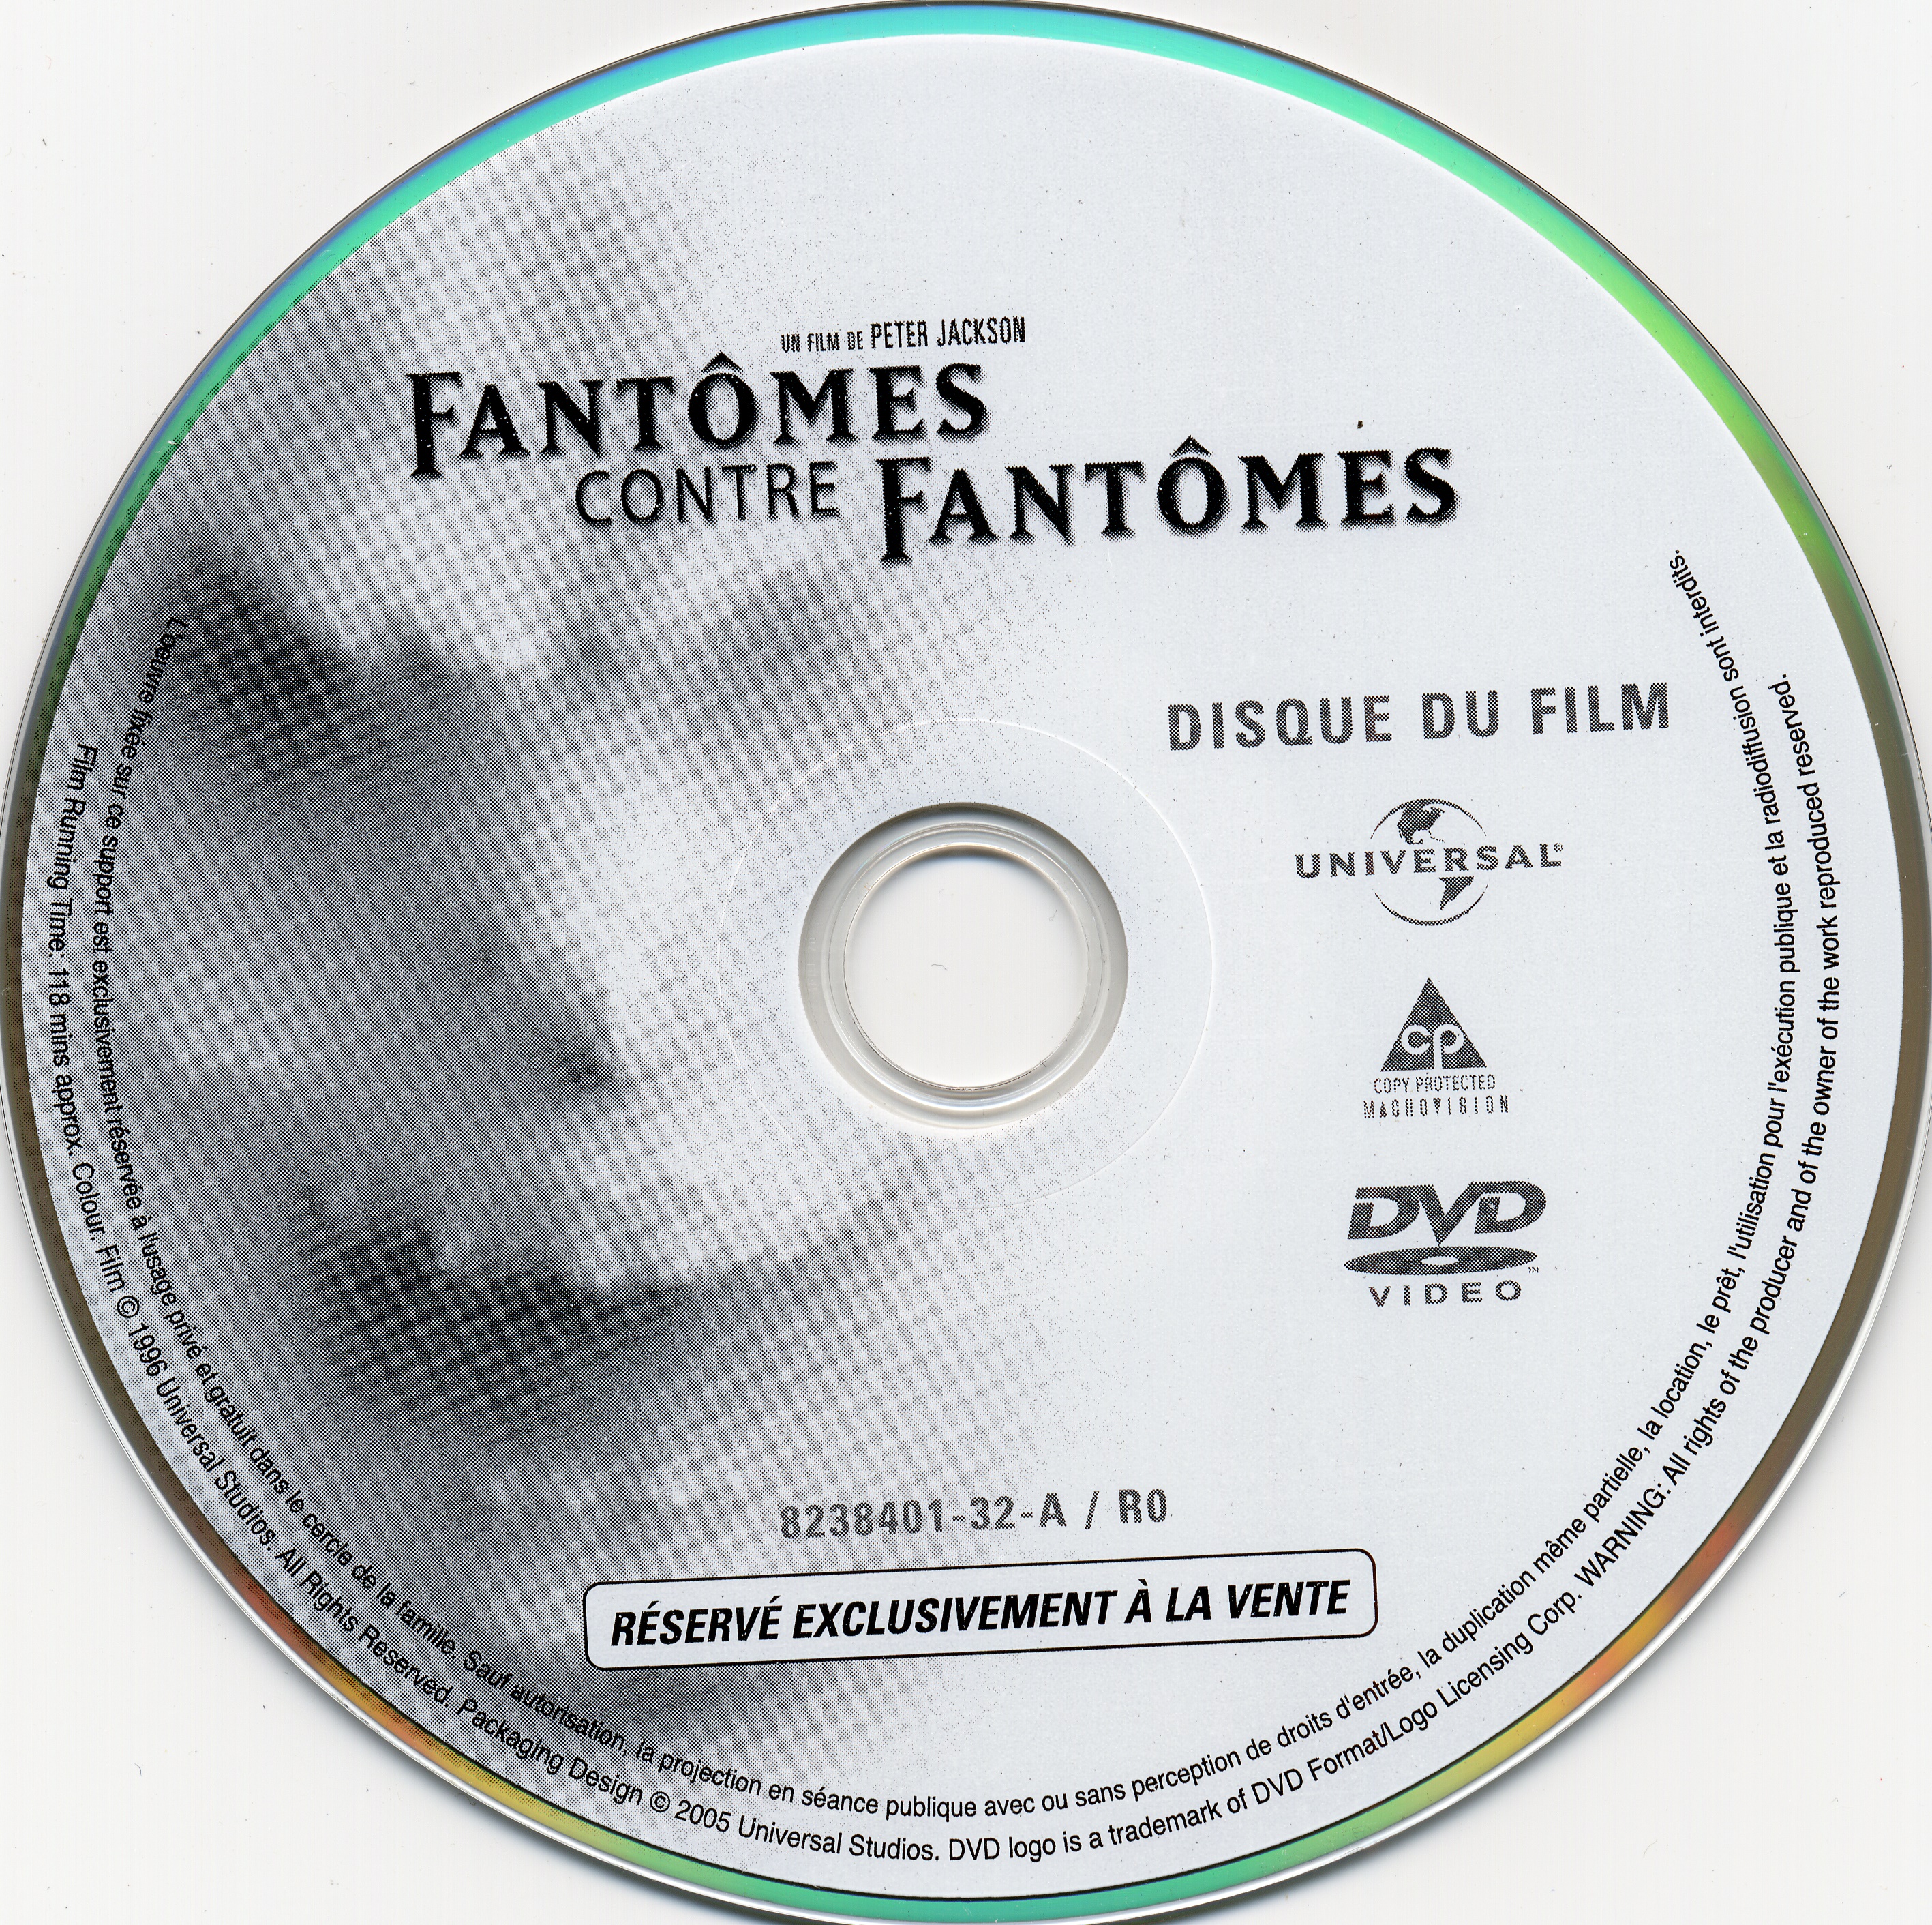 Fantomes contre fantomes DISC 1